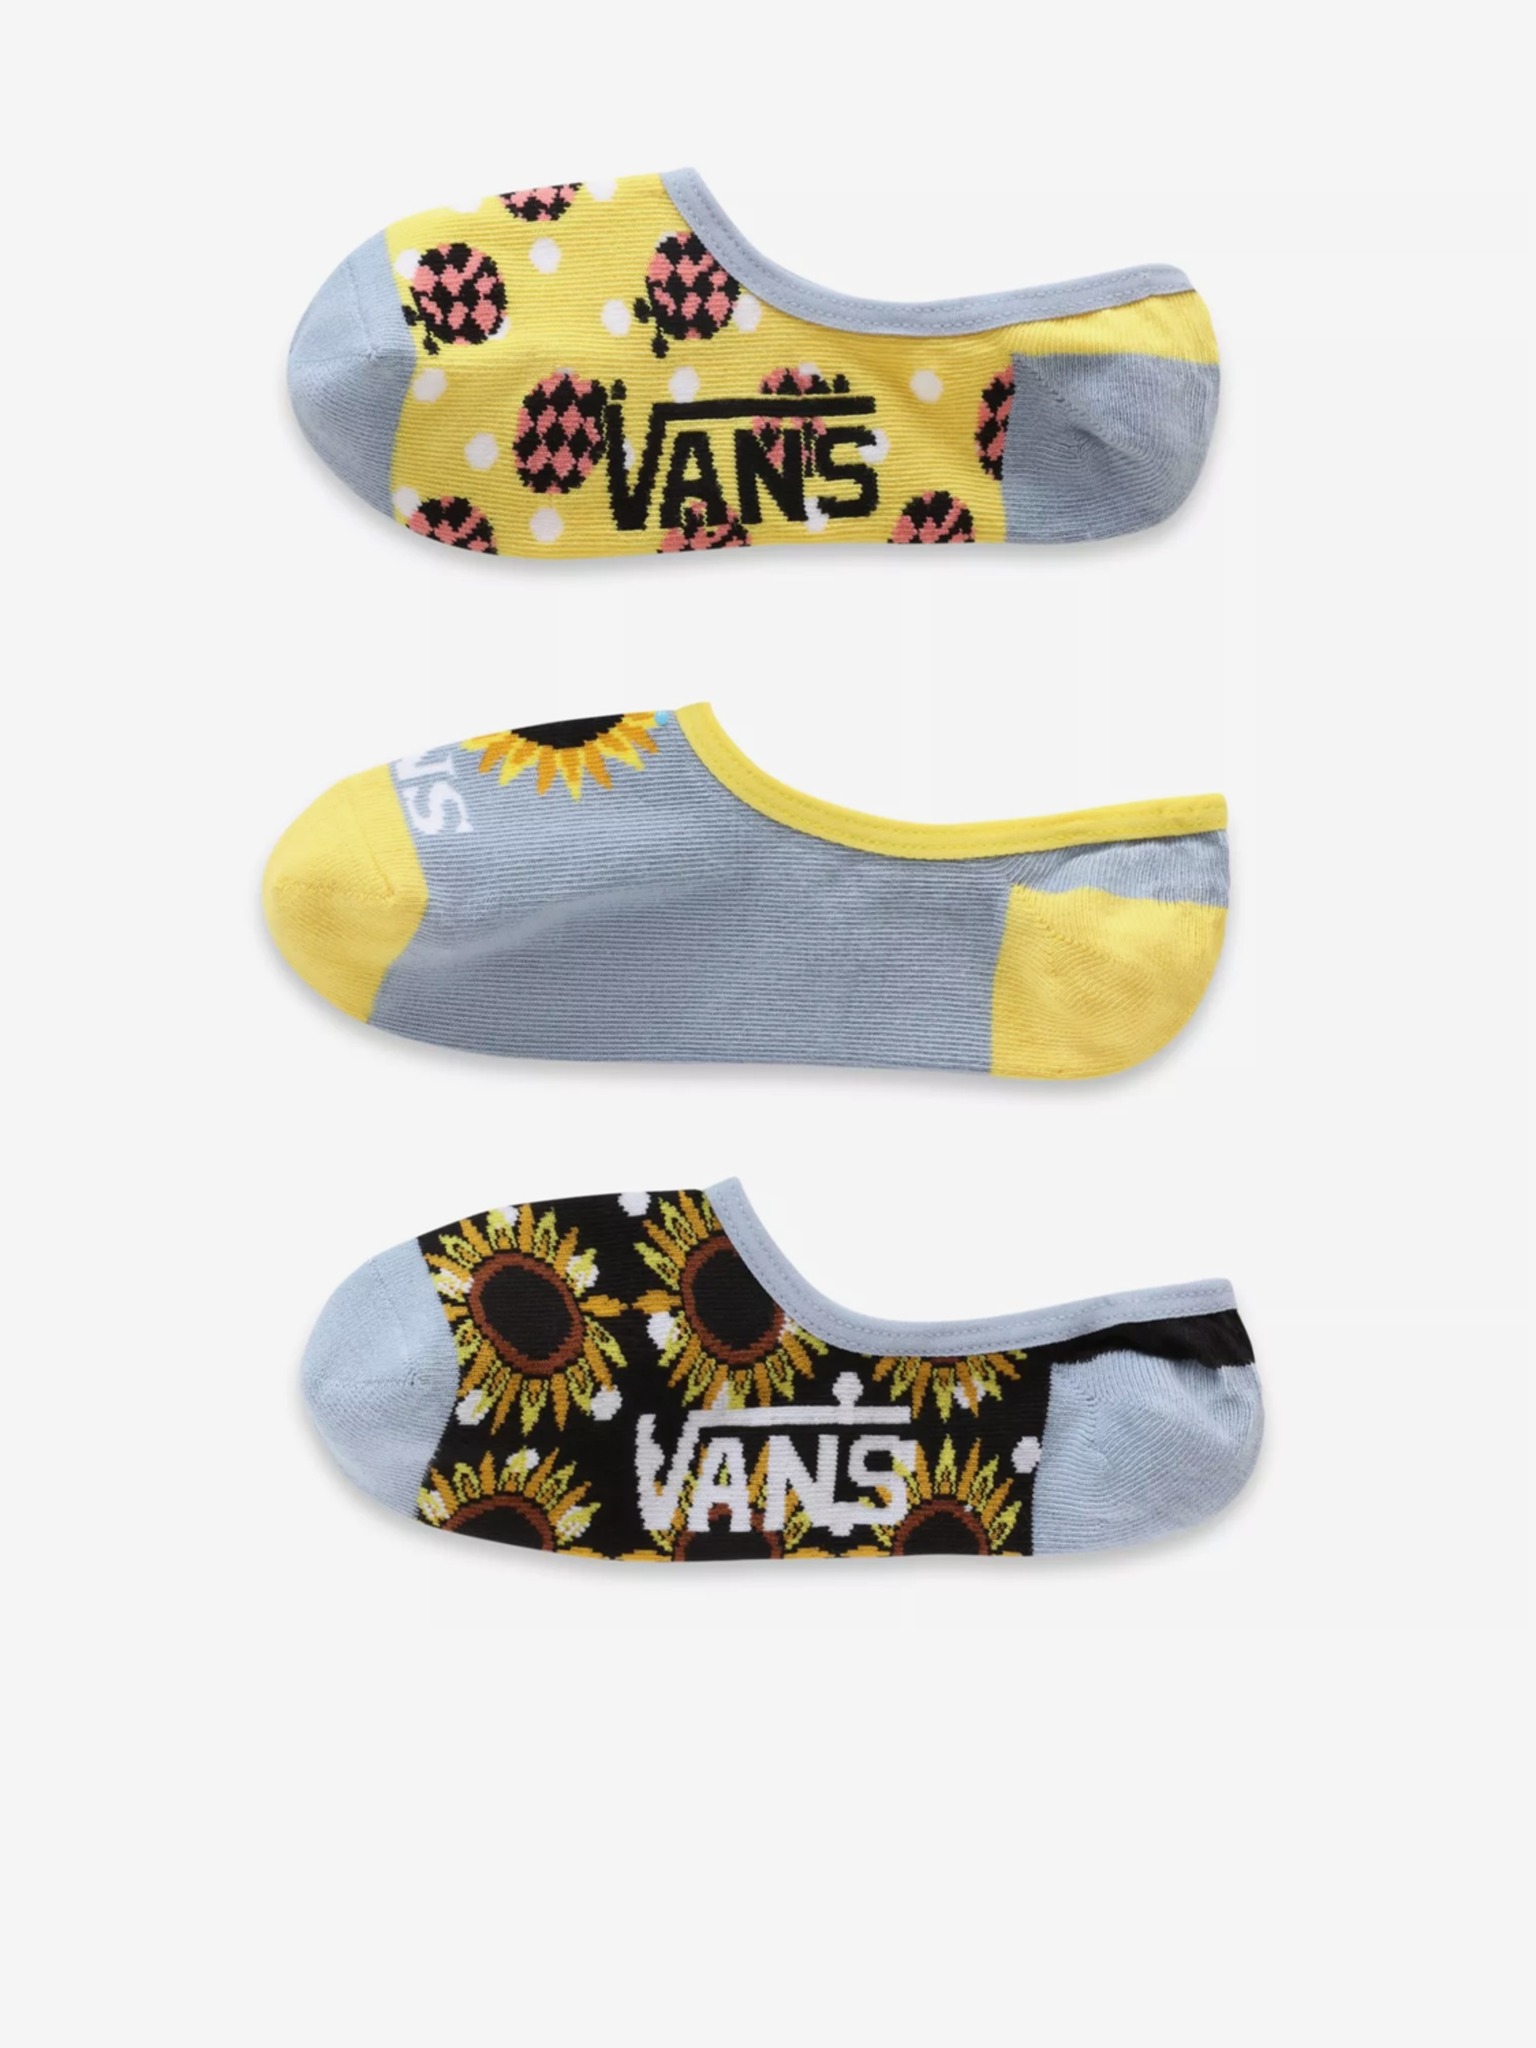 Ponožky 3 páry Vans